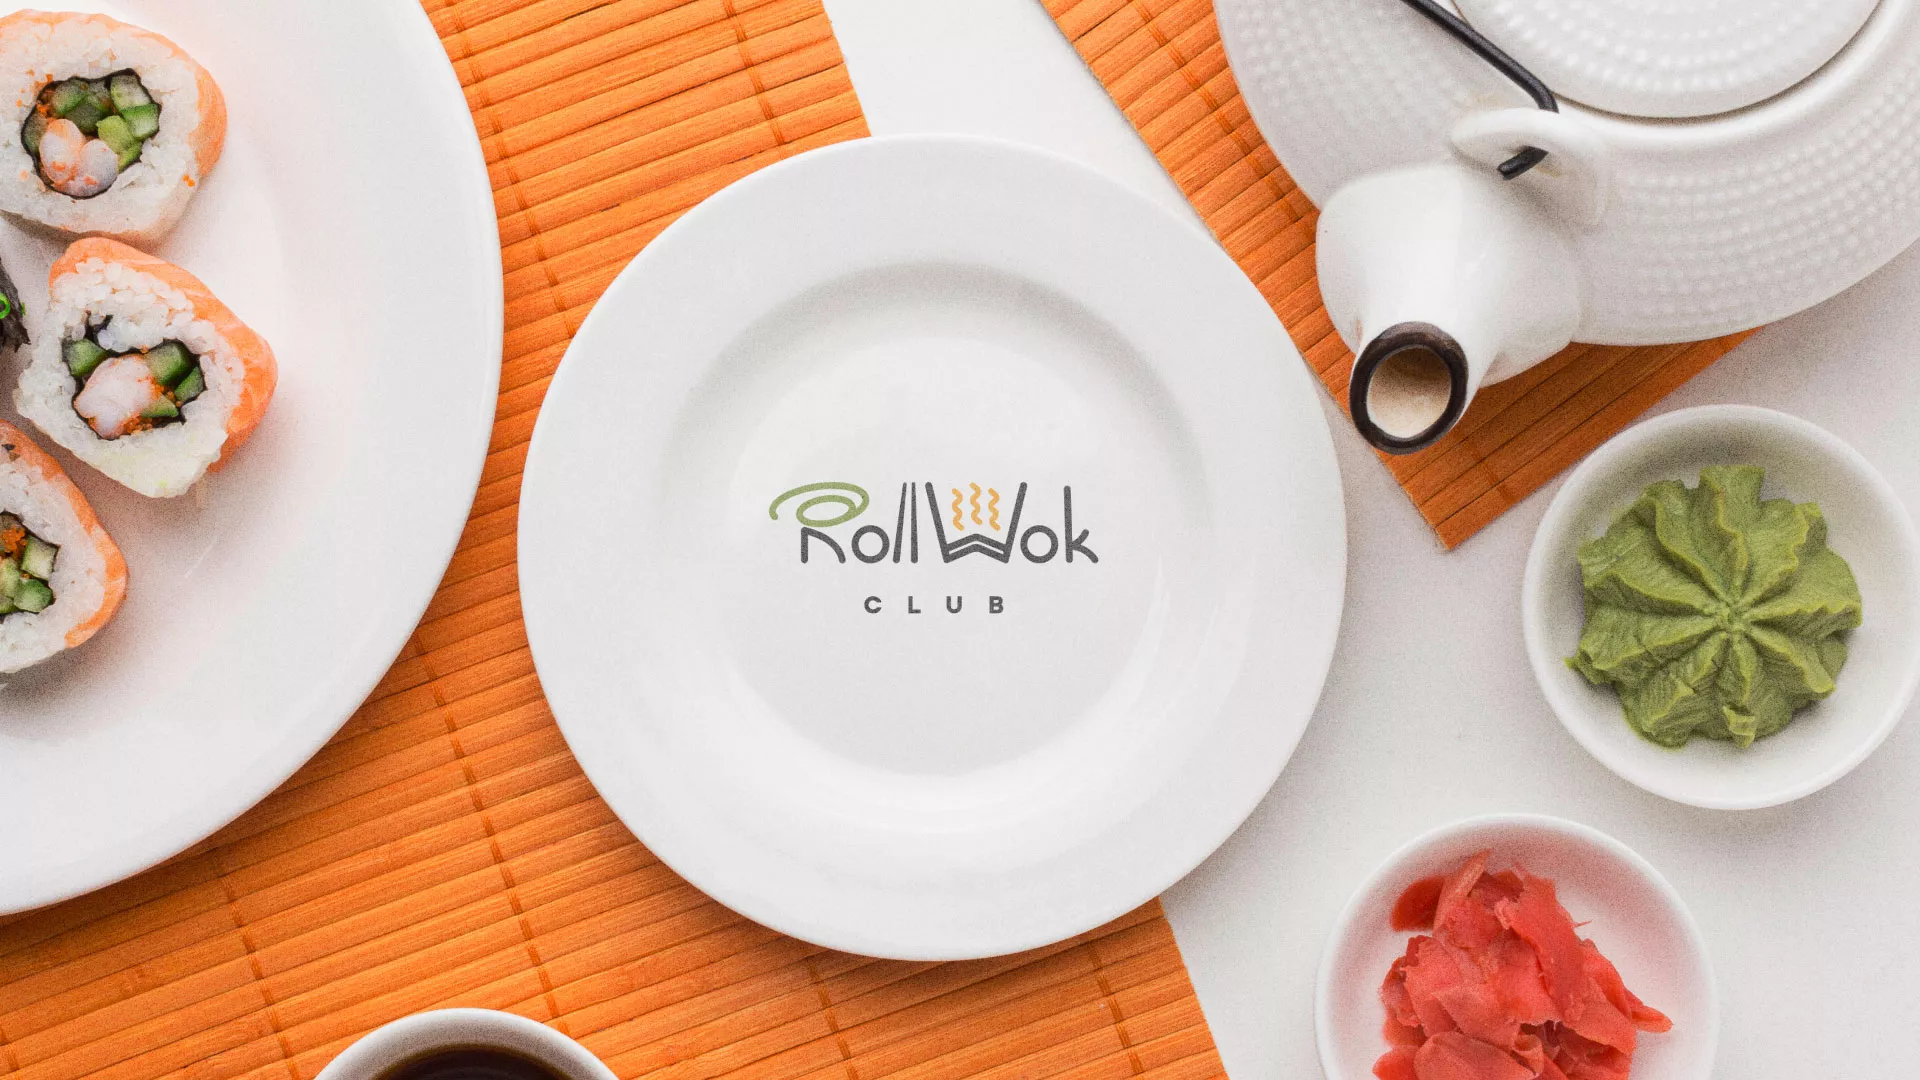 Разработка логотипа и фирменного стиля суши-бара «Roll Wok Club» в Котельниках